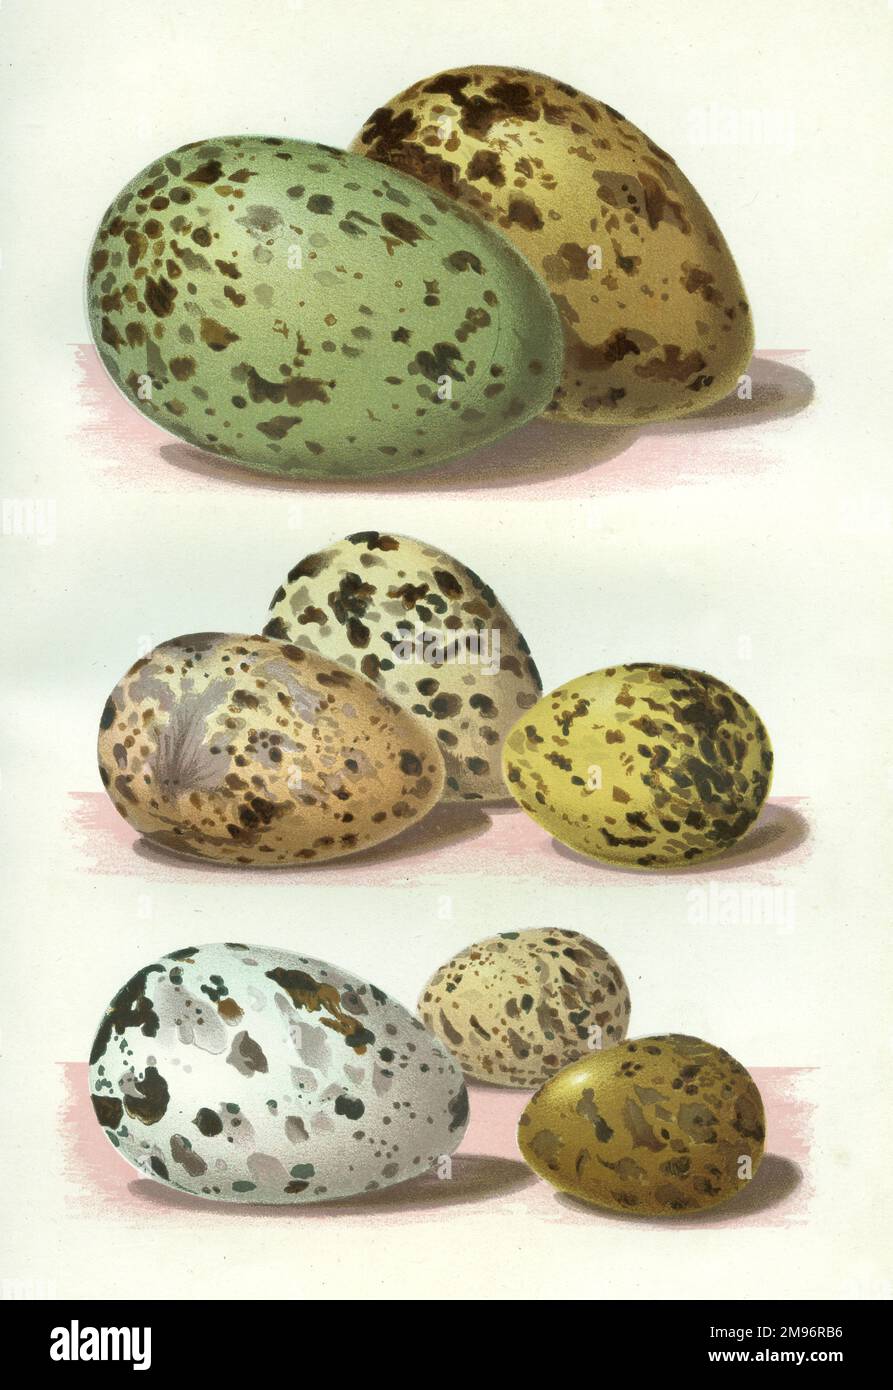 Die Eier britischer Vögel -- gemischte Eier in verschiedenen Farben und Größen. Stockfoto